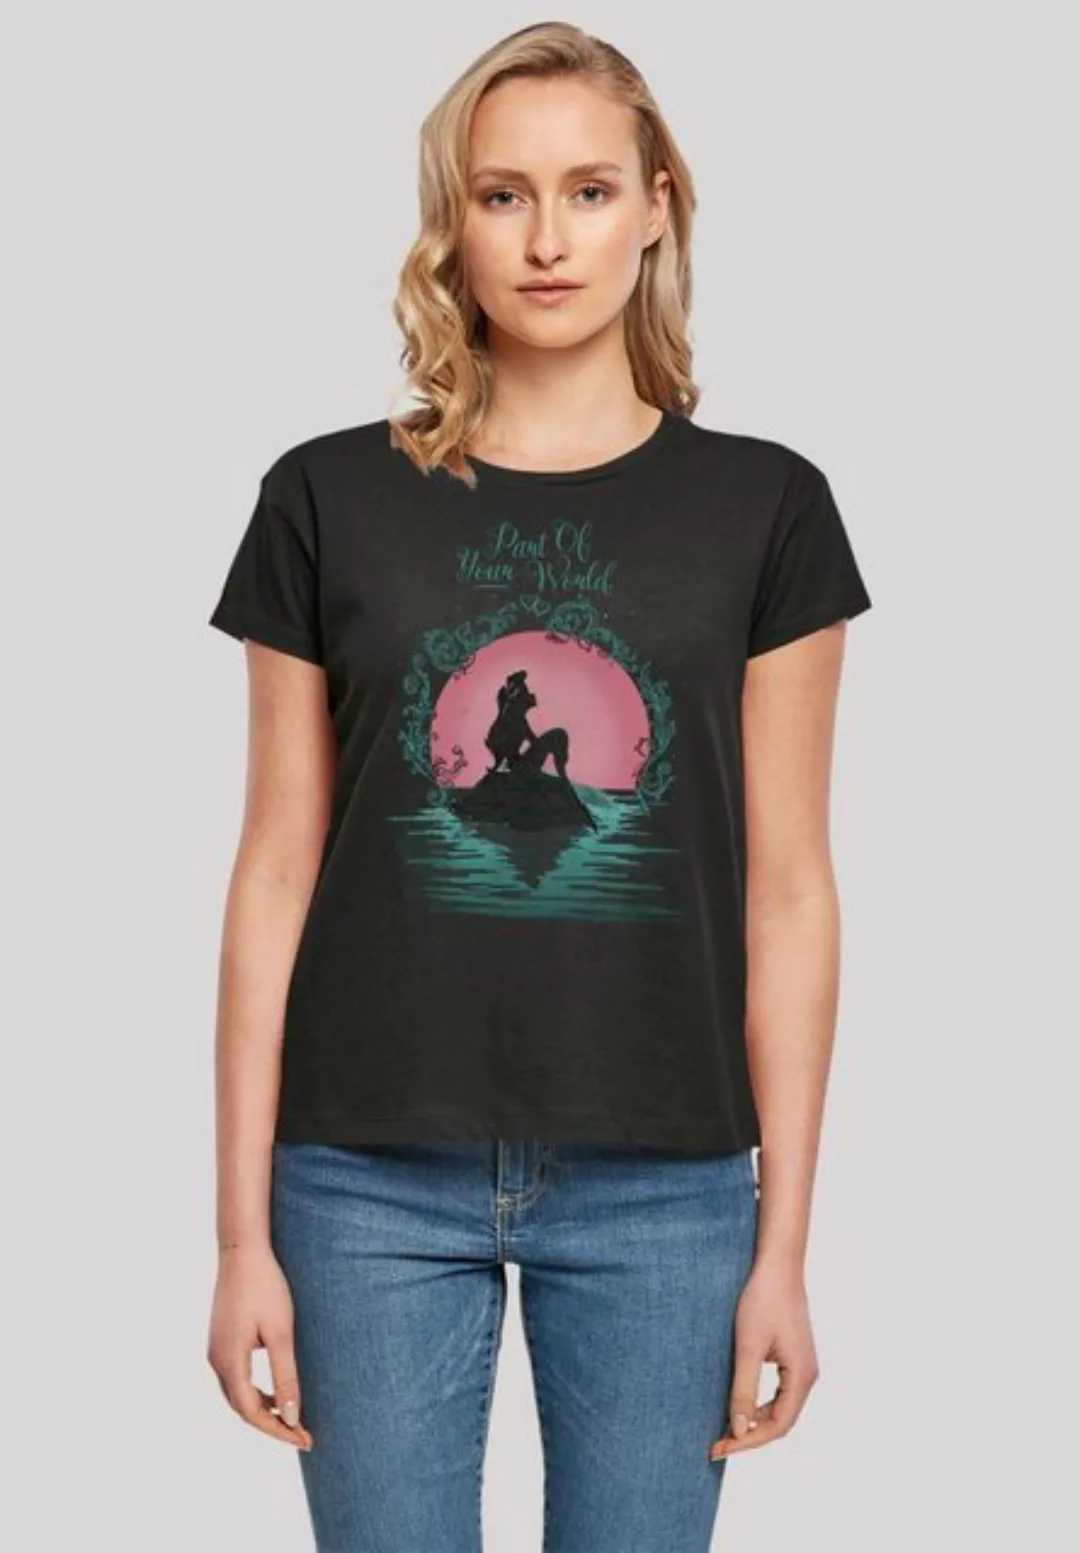 F4NT4STIC T-Shirt "Disney Arielle die Meerjungfrau Part Of Your World", Pre günstig online kaufen